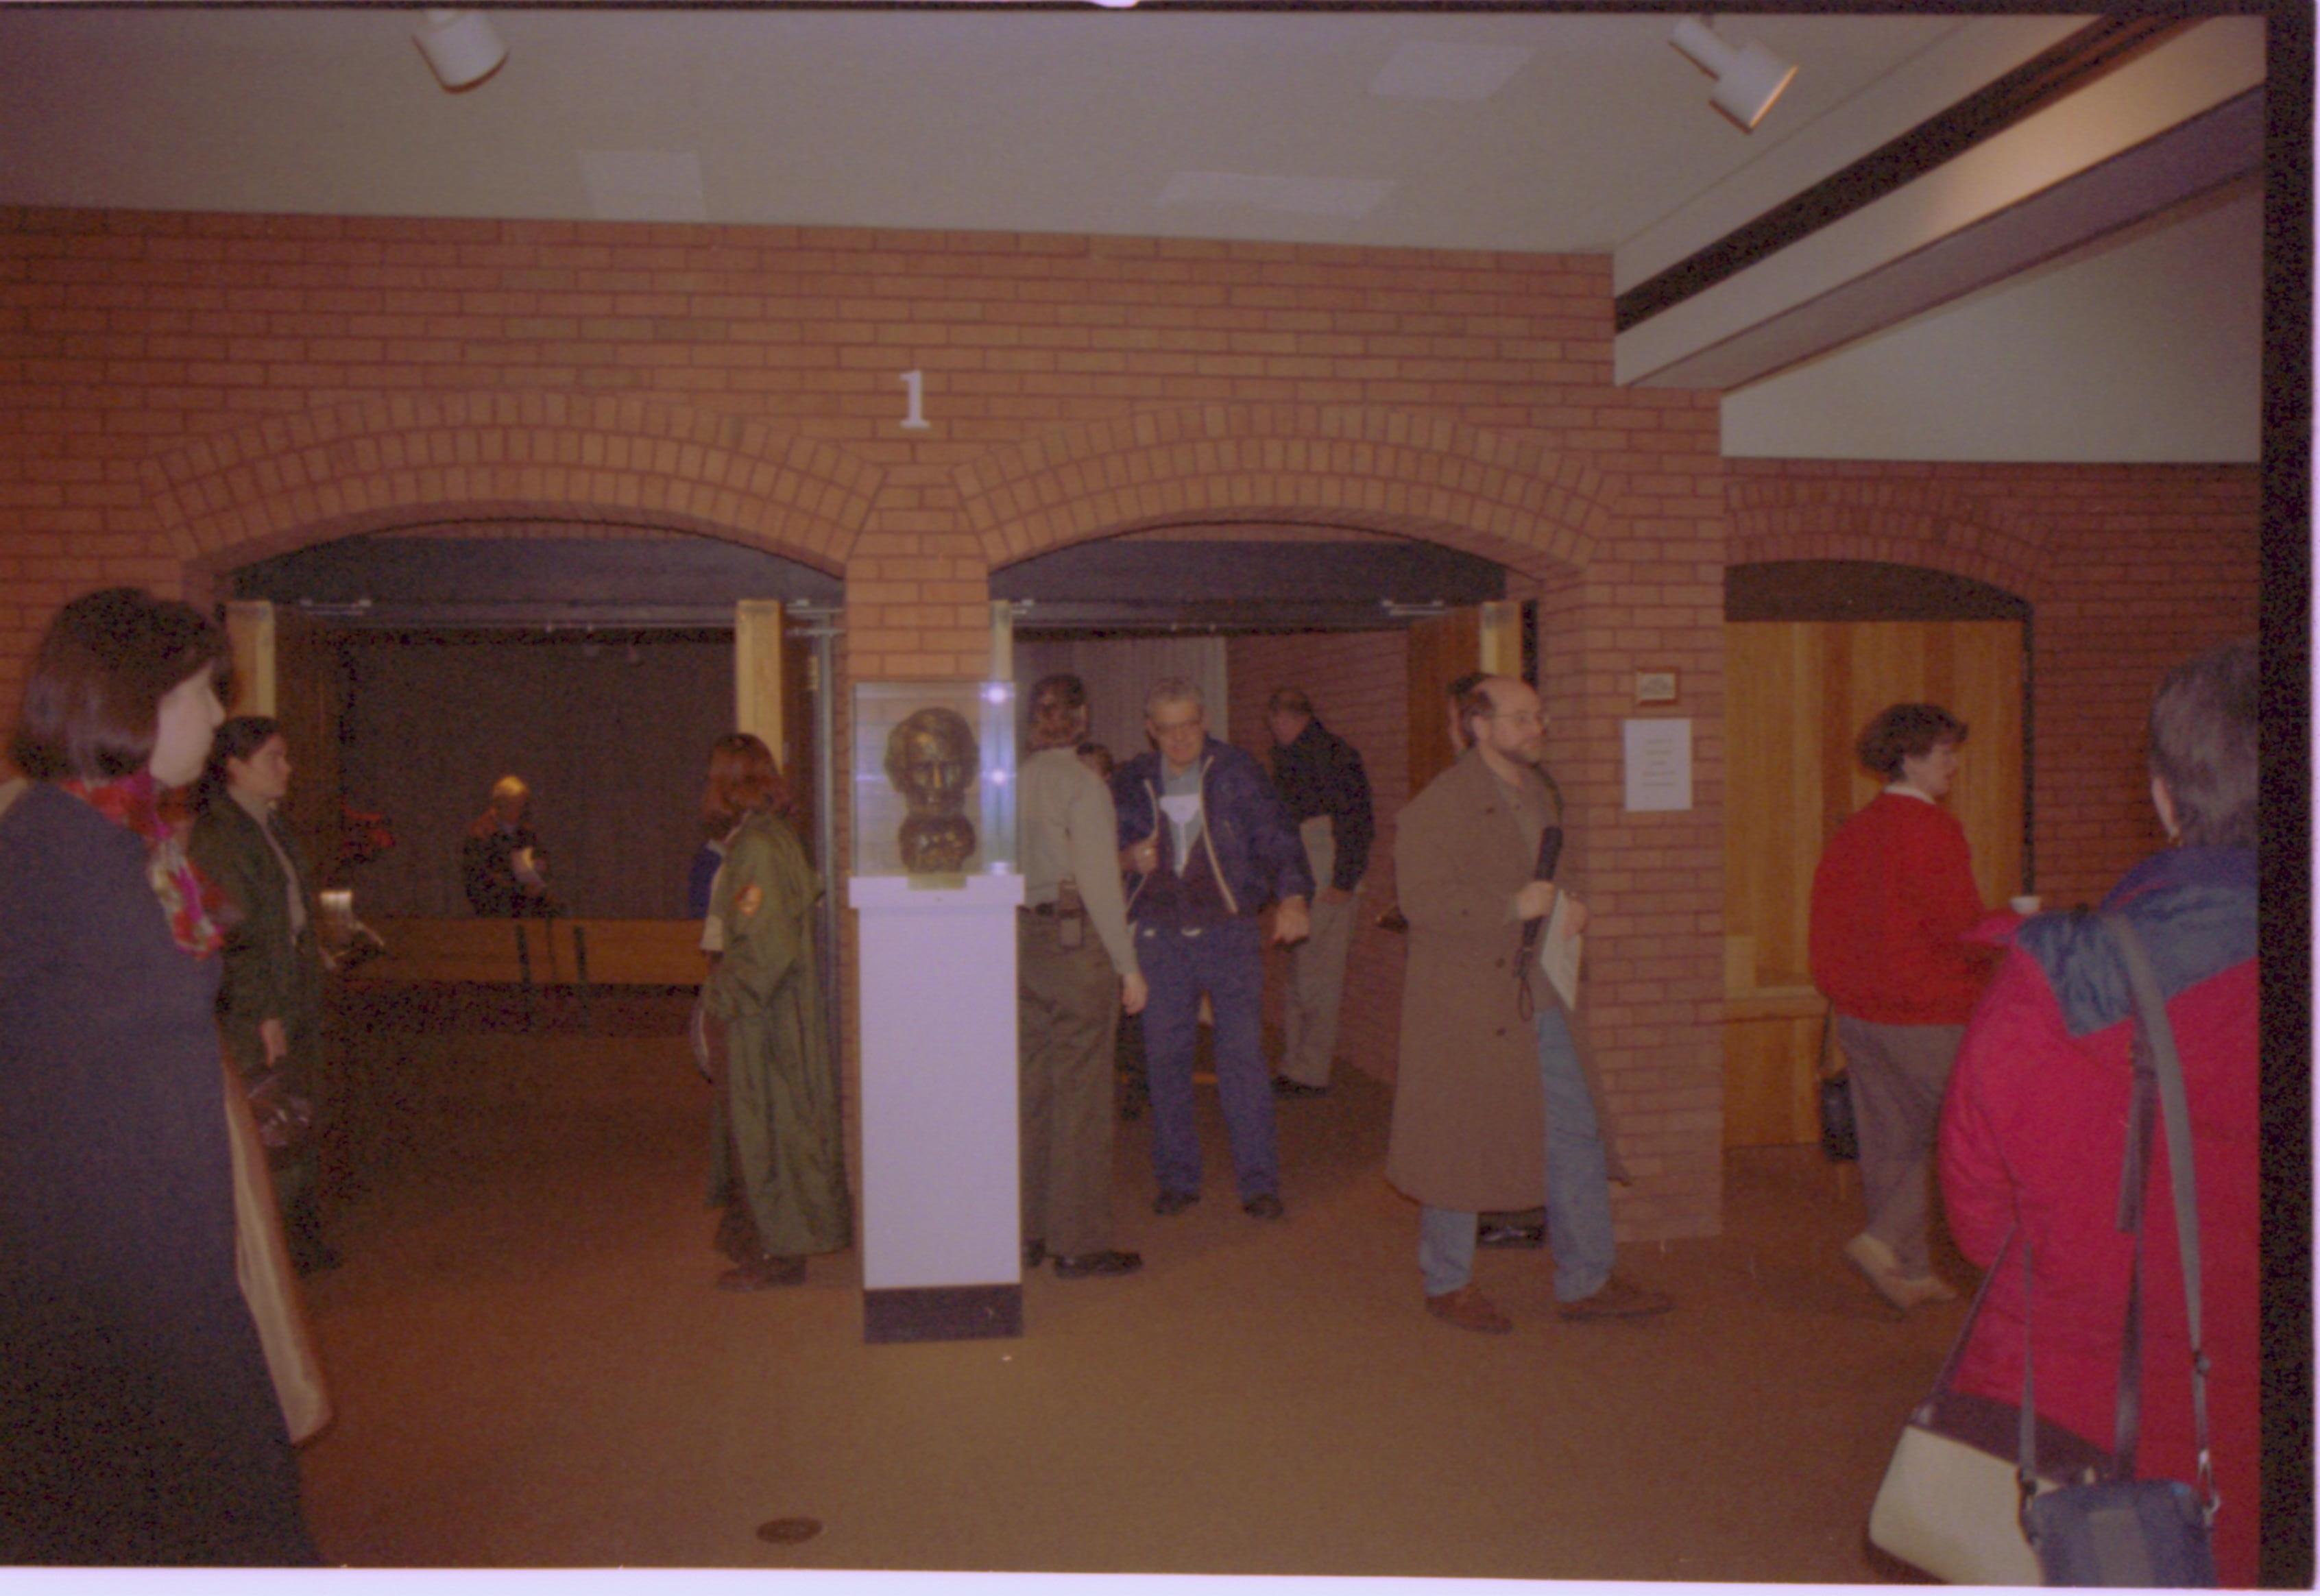 Guests exiting Theater I. 2-1997 Colloq (color); 22 Colloquium, 1997